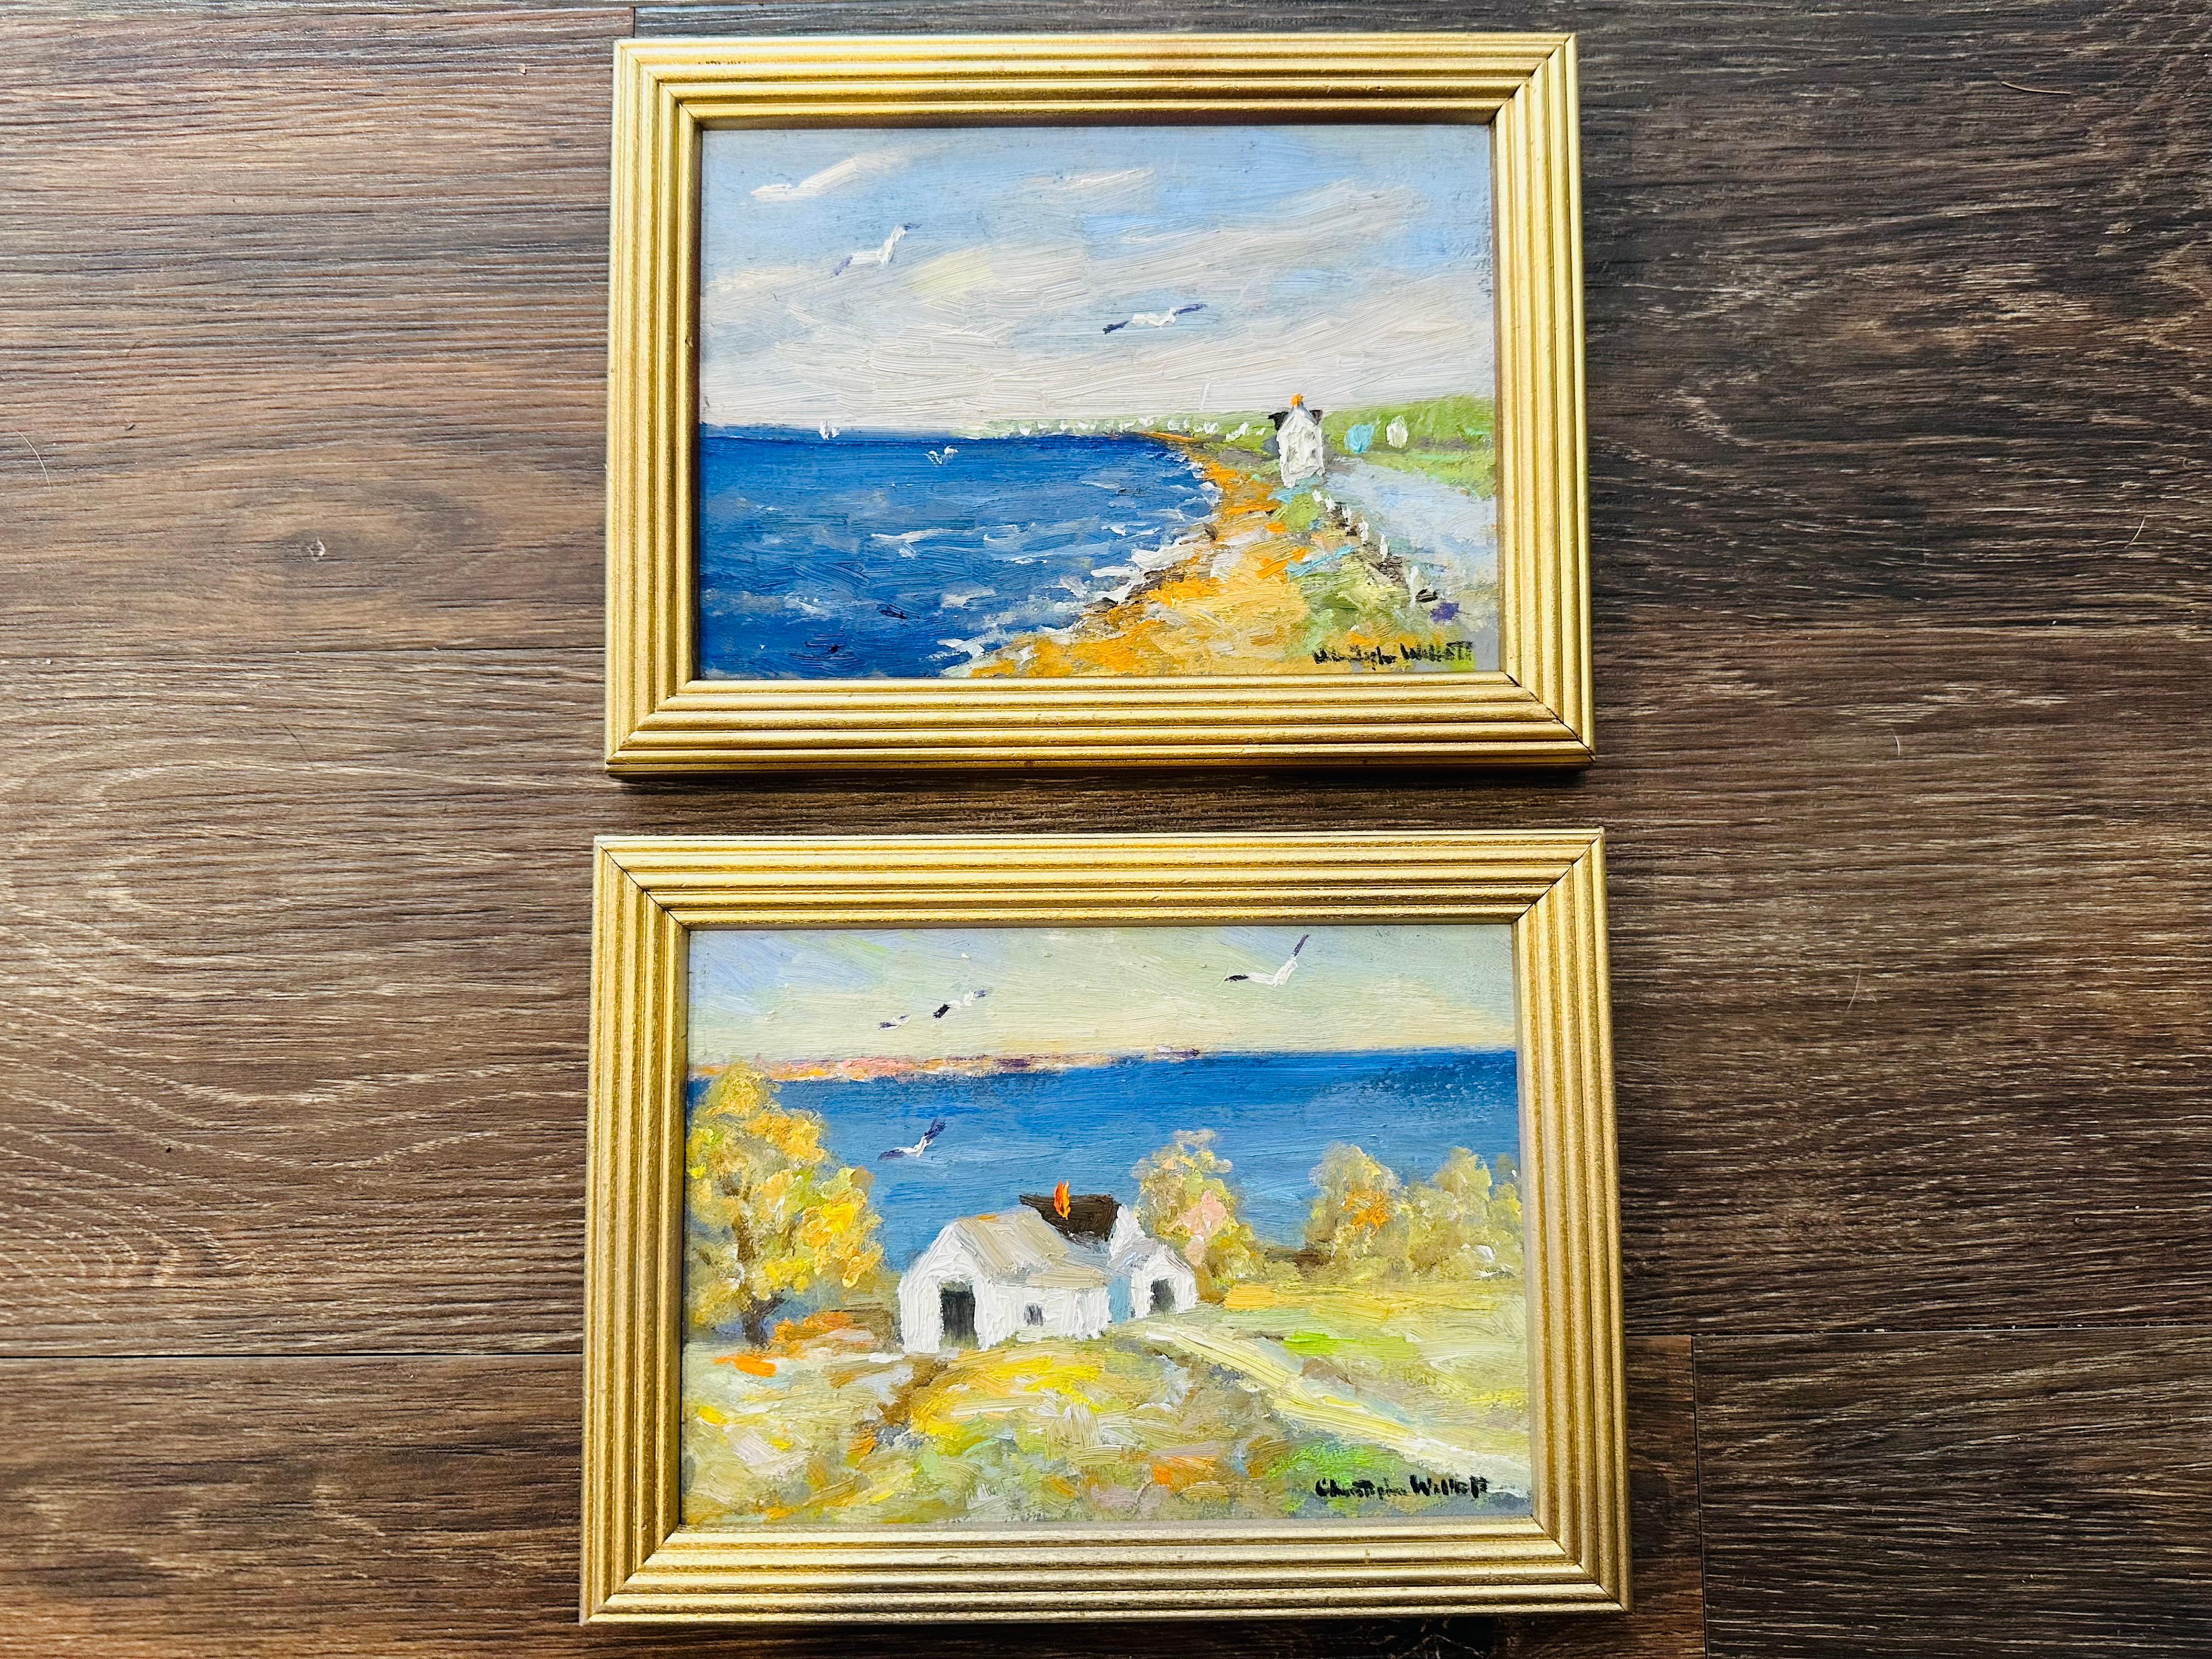 Impressionniste Provincetown Massachusetts - Un après-midi d'été bienheureux à Provincetown. Mouettes survolant la maison de la colline. Une maison blanche pittoresque surplombant la plage avec les vagues qui s'écrasent en contrebas. Profitez de